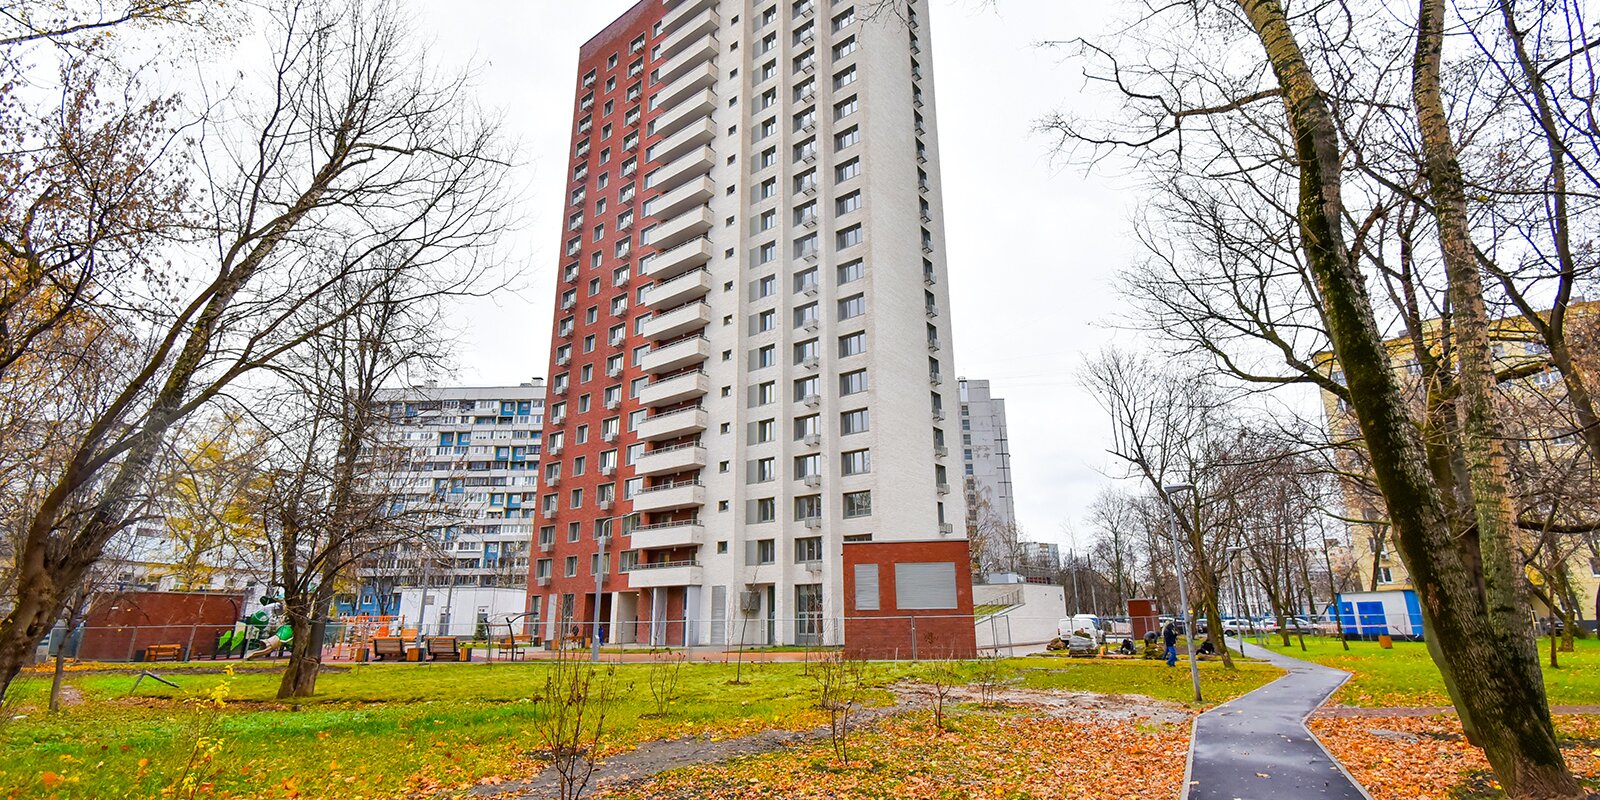 93 процента семей из дома в районе Лосиноостровский выбрали новые квартиры по программе реновации